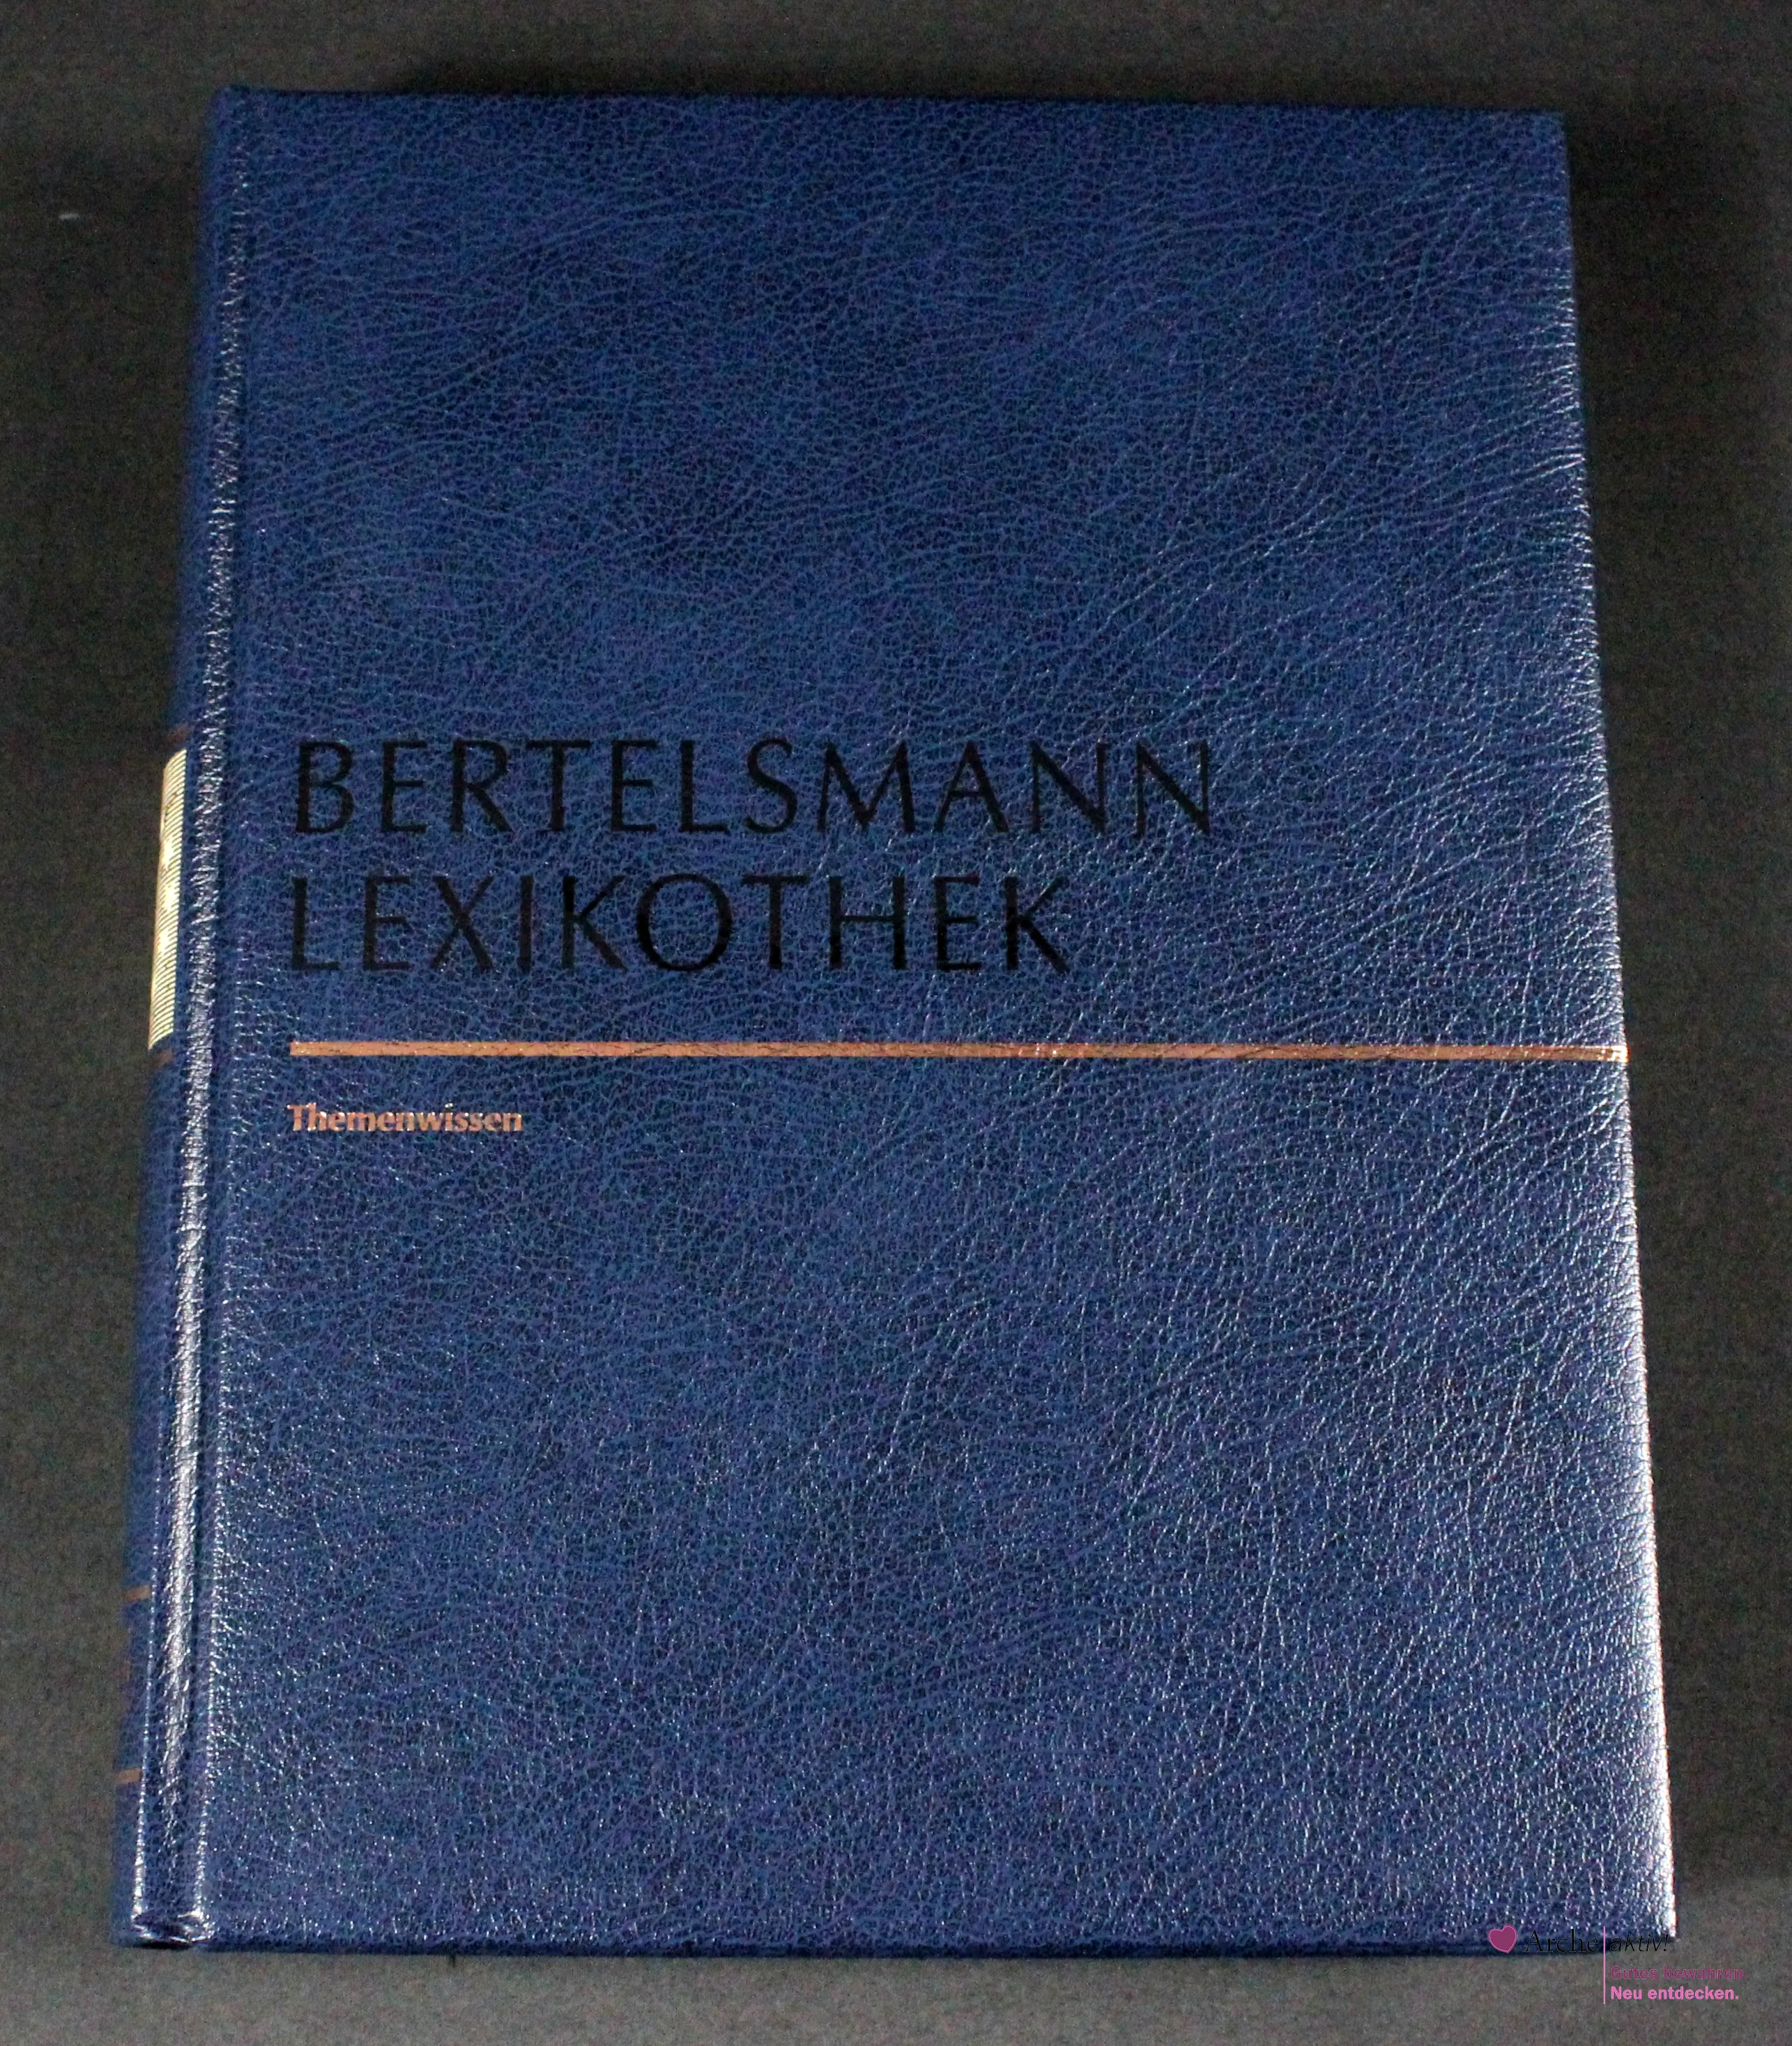 Bertelsmann Lexikothek - Themenwissen - Wegweiser Wirtschaft und Gesellschaft, gebraucht